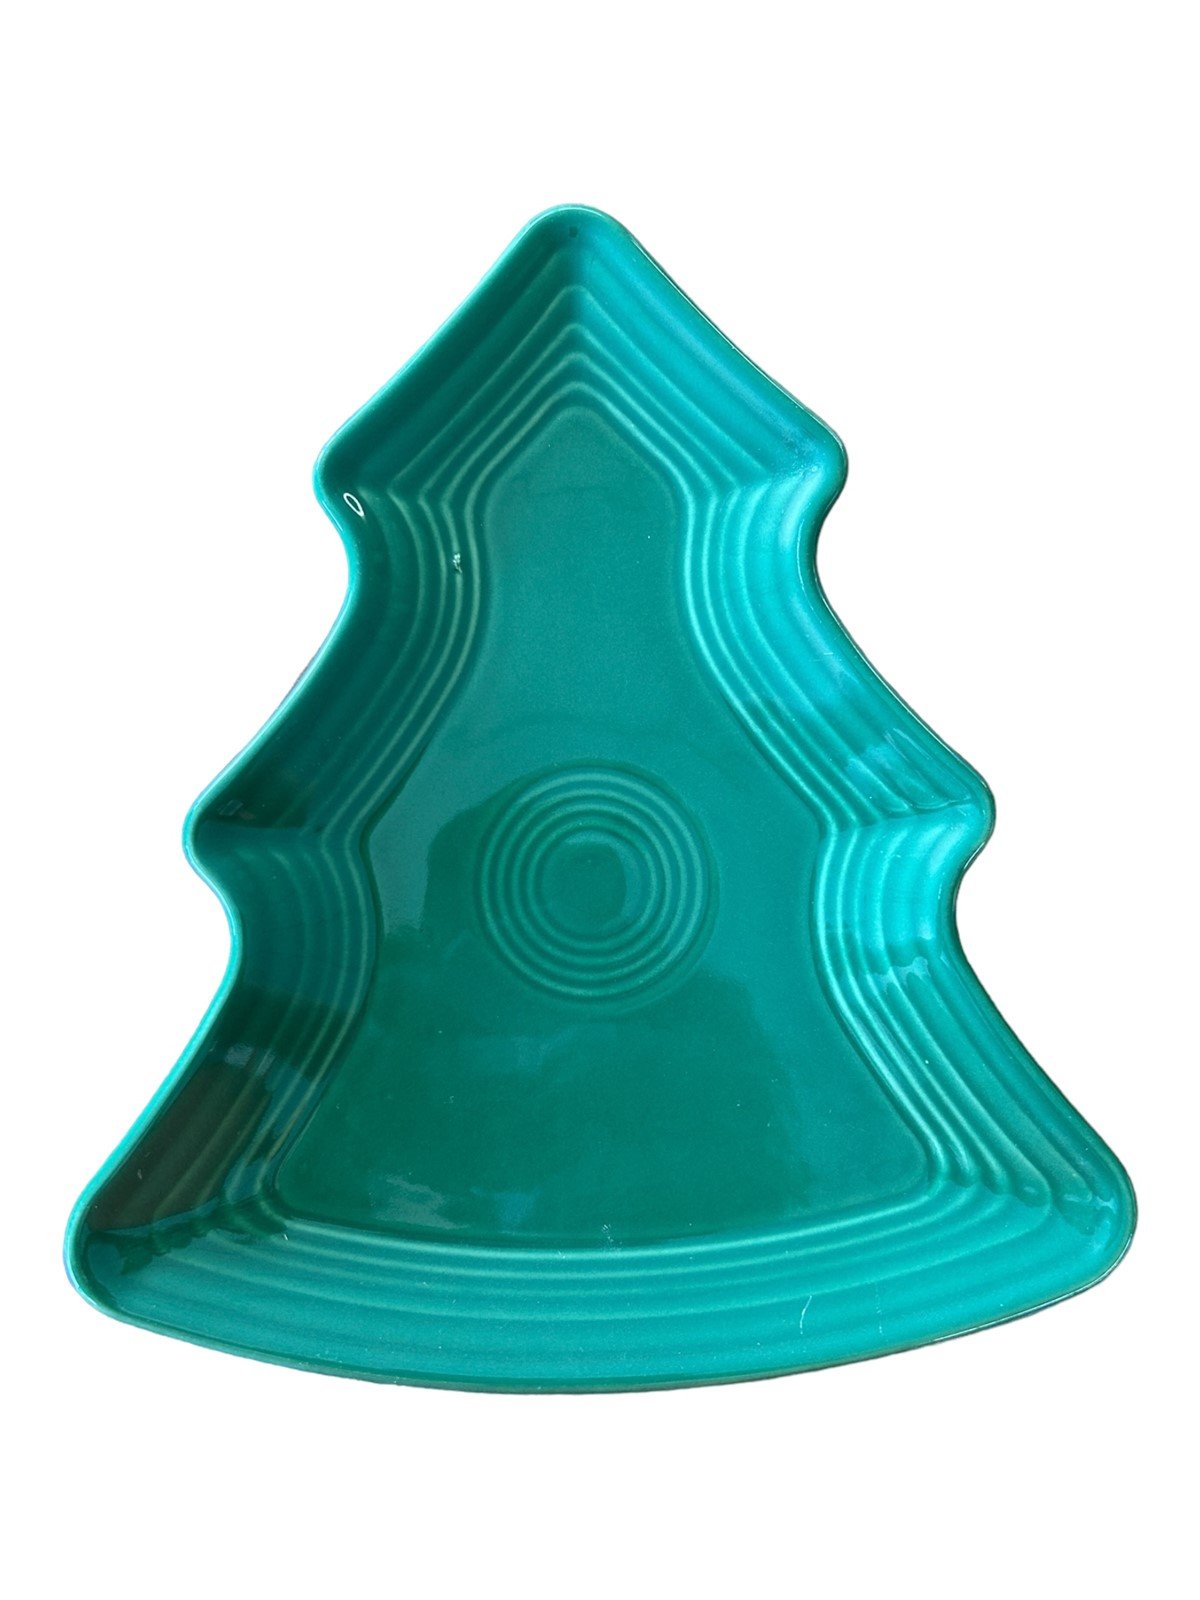 Fiesta - Jade Green Tree Plate Homer Laughlin Ceramic Christmas Platter Serving